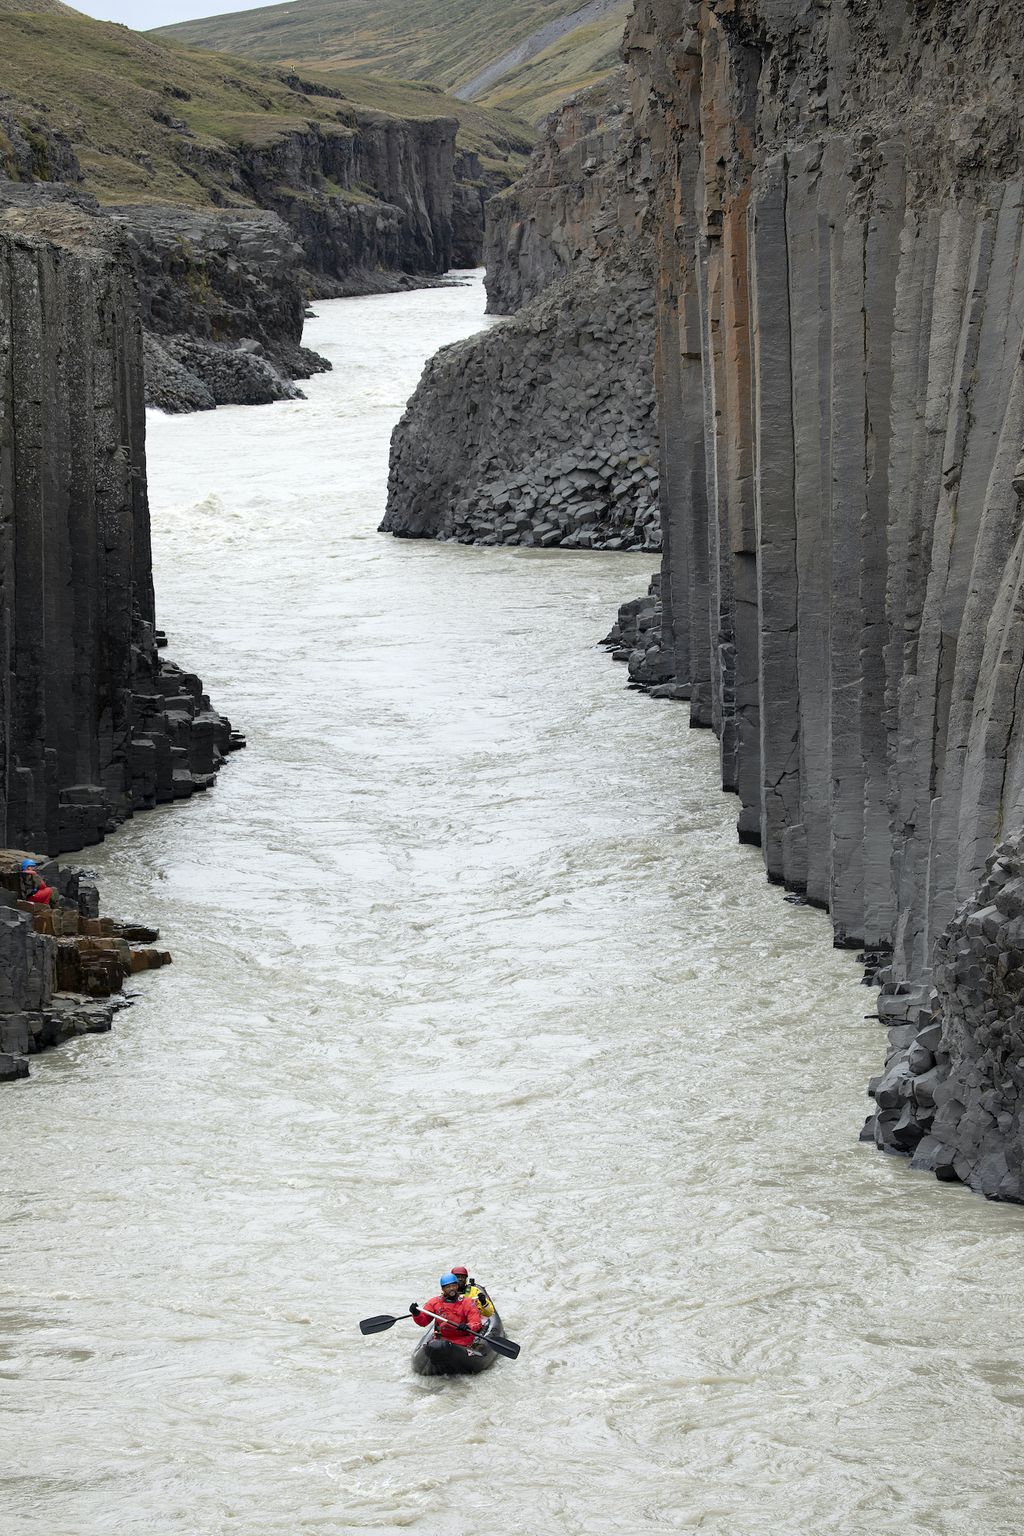 Série leva Will Smith para explorar os rios da Islândia (Imagem: Bragi Þór Jósefsson/National Geographic/Divulgação)